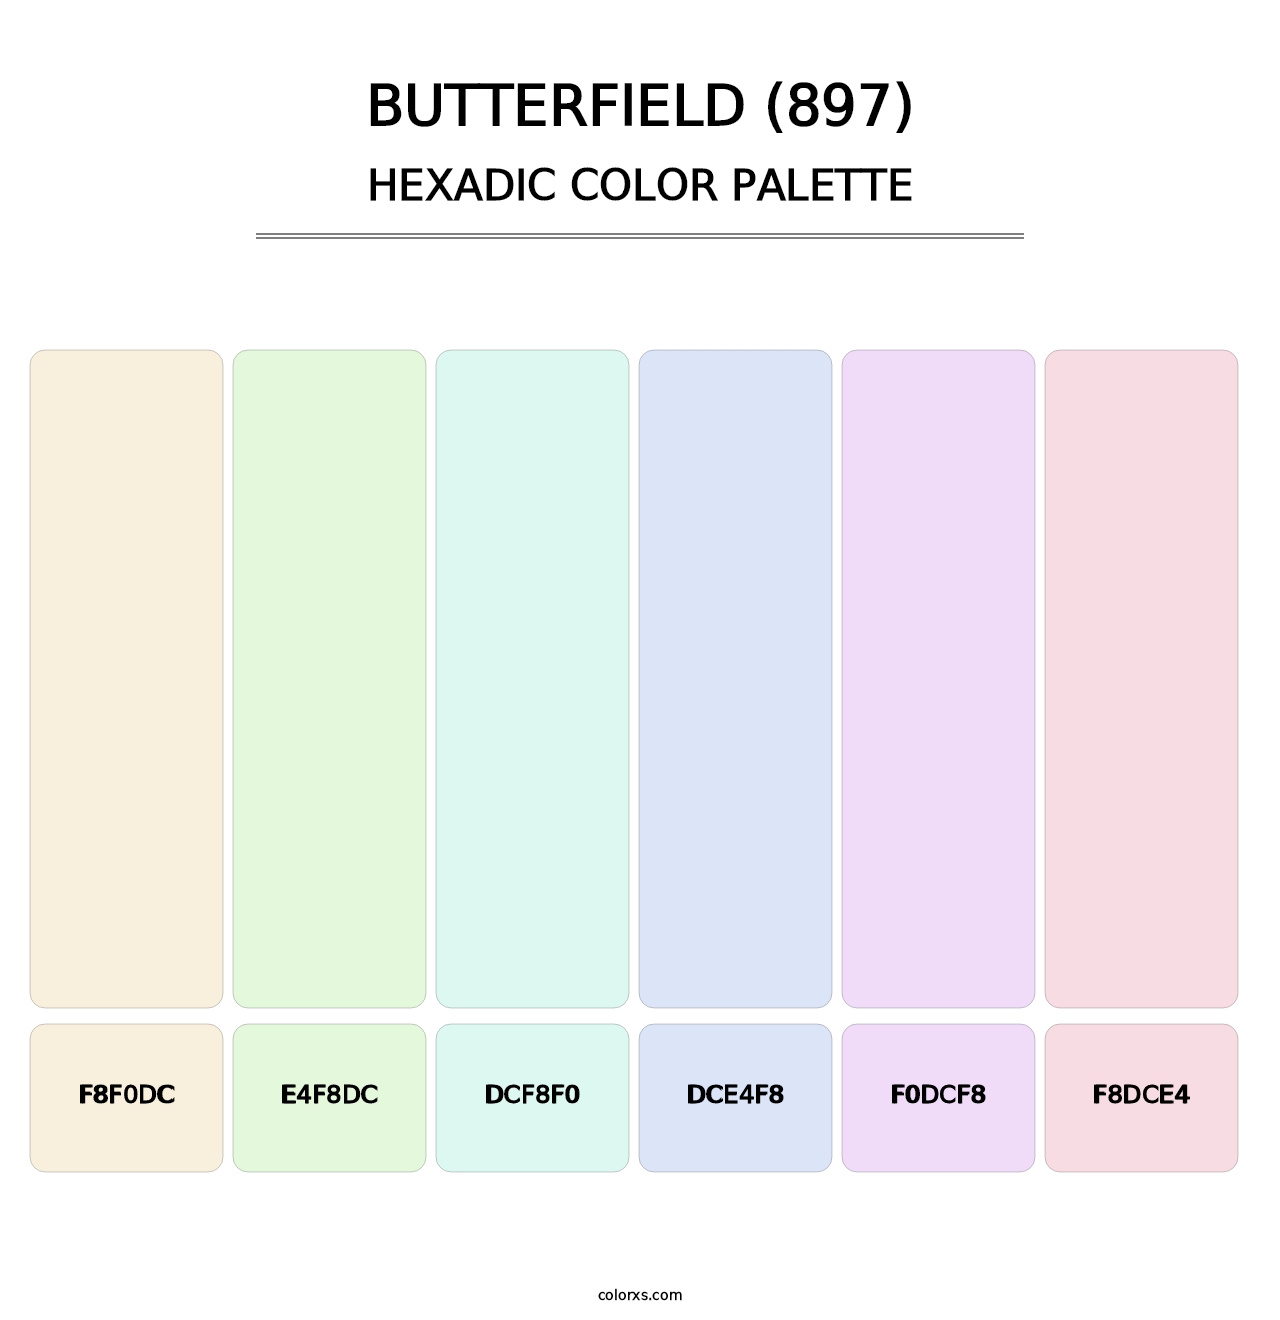 Butterfield (897) - Hexadic Color Palette